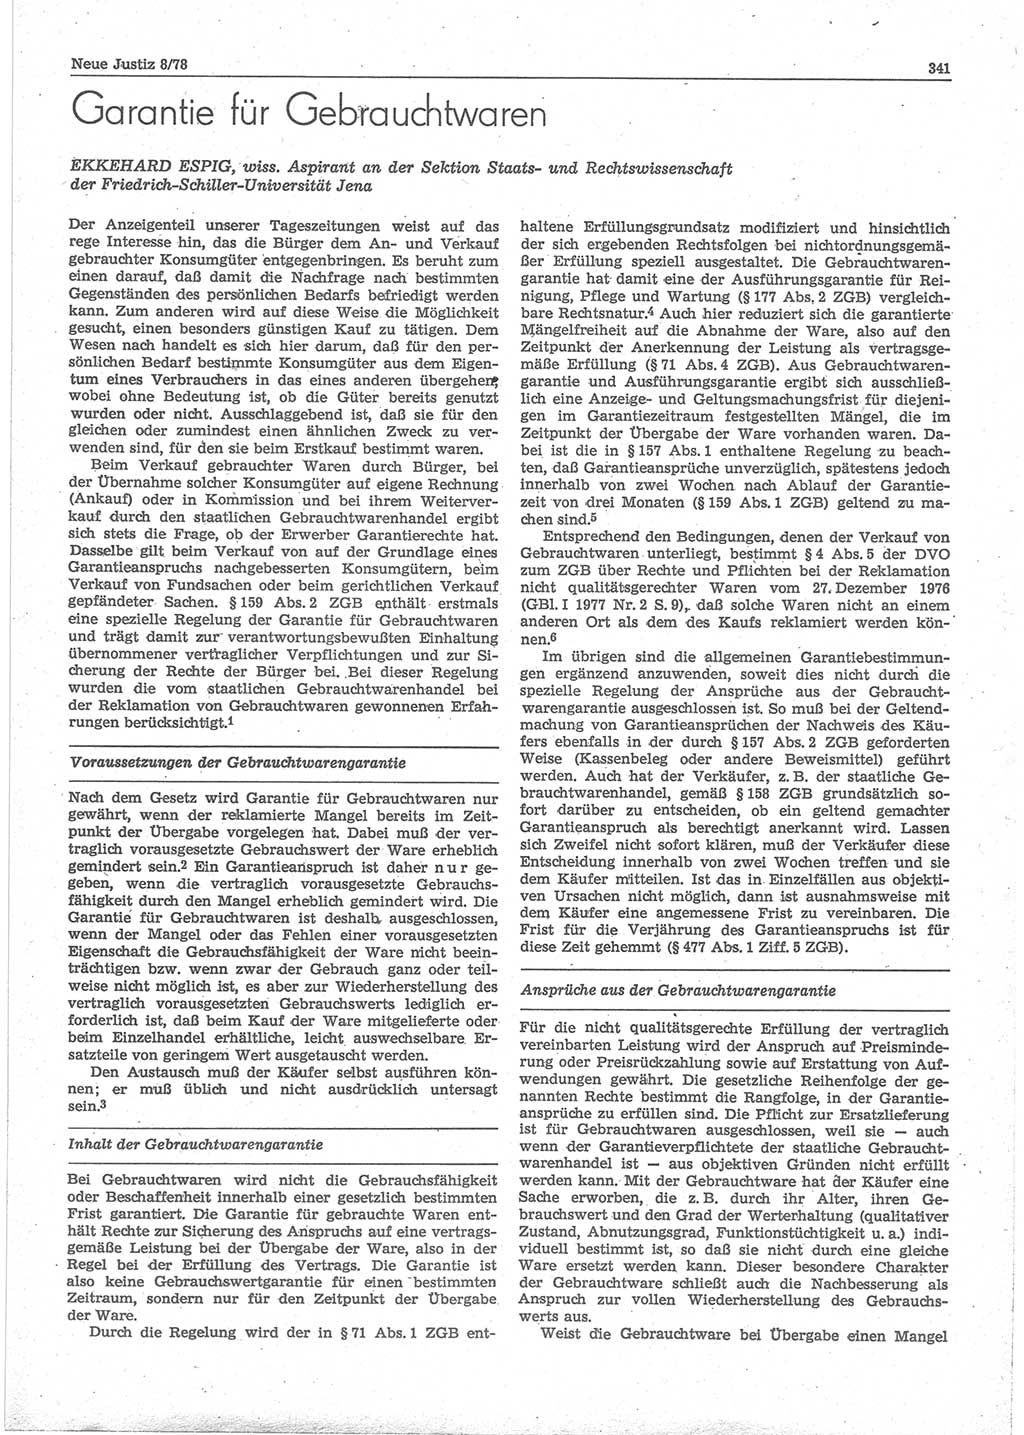 Neue Justiz (NJ), Zeitschrift für sozialistisches Recht und Gesetzlichkeit [Deutsche Demokratische Republik (DDR)], 32. Jahrgang 1978, Seite 341 (NJ DDR 1978, S. 341)